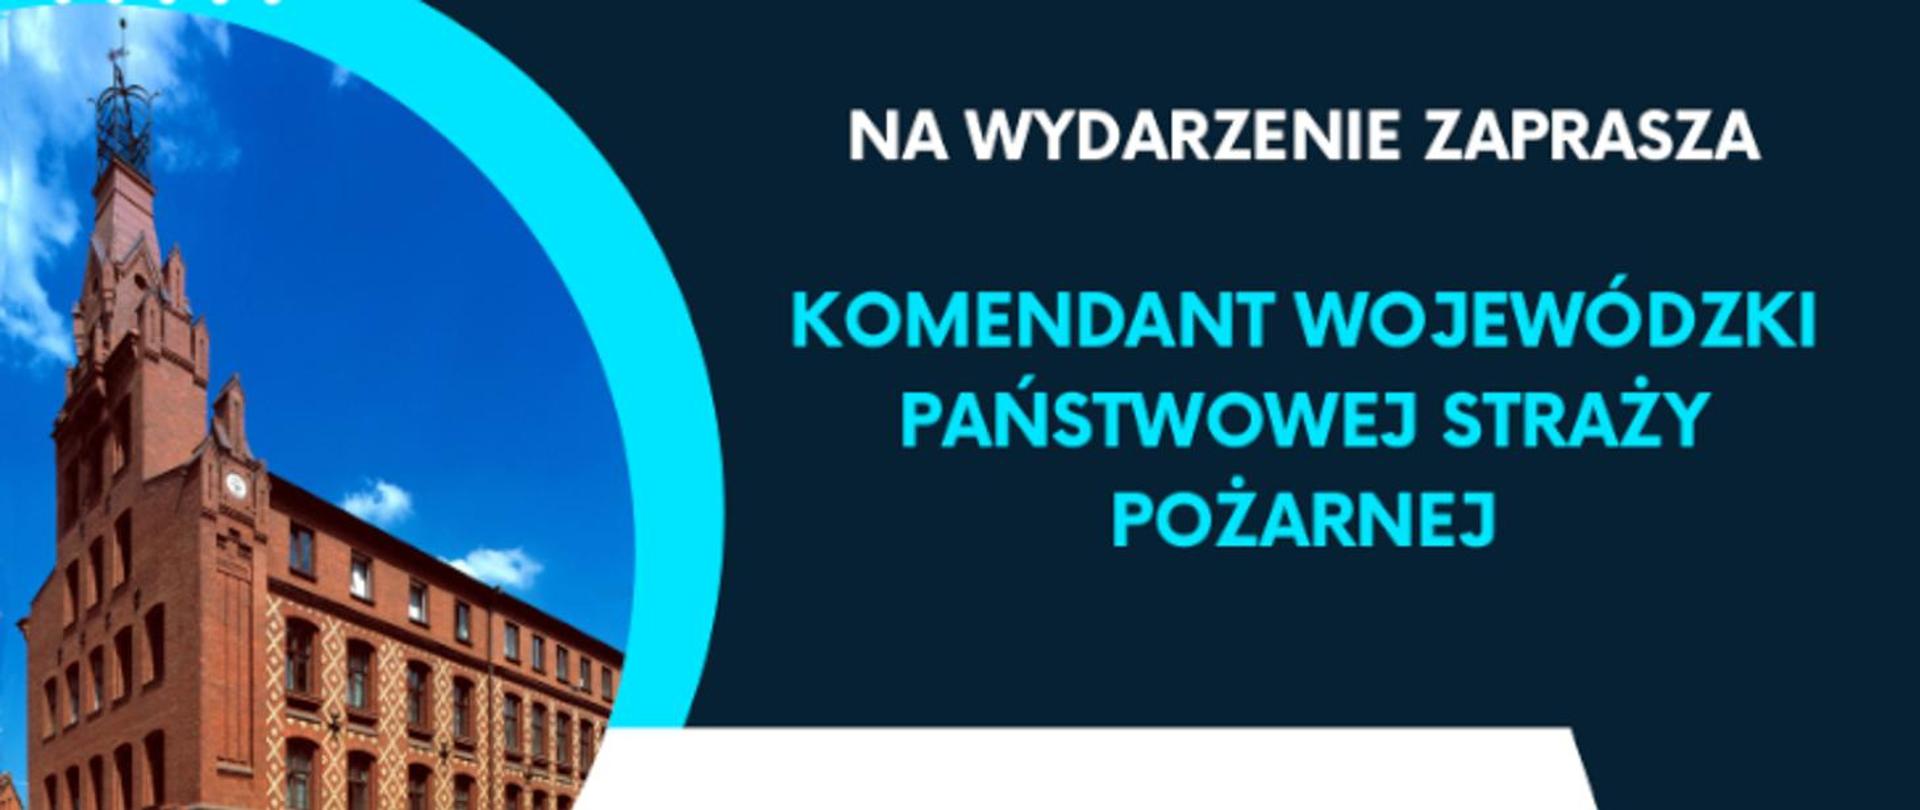 Komendant Wojewódzki PSP zaprasza na wydarzenie